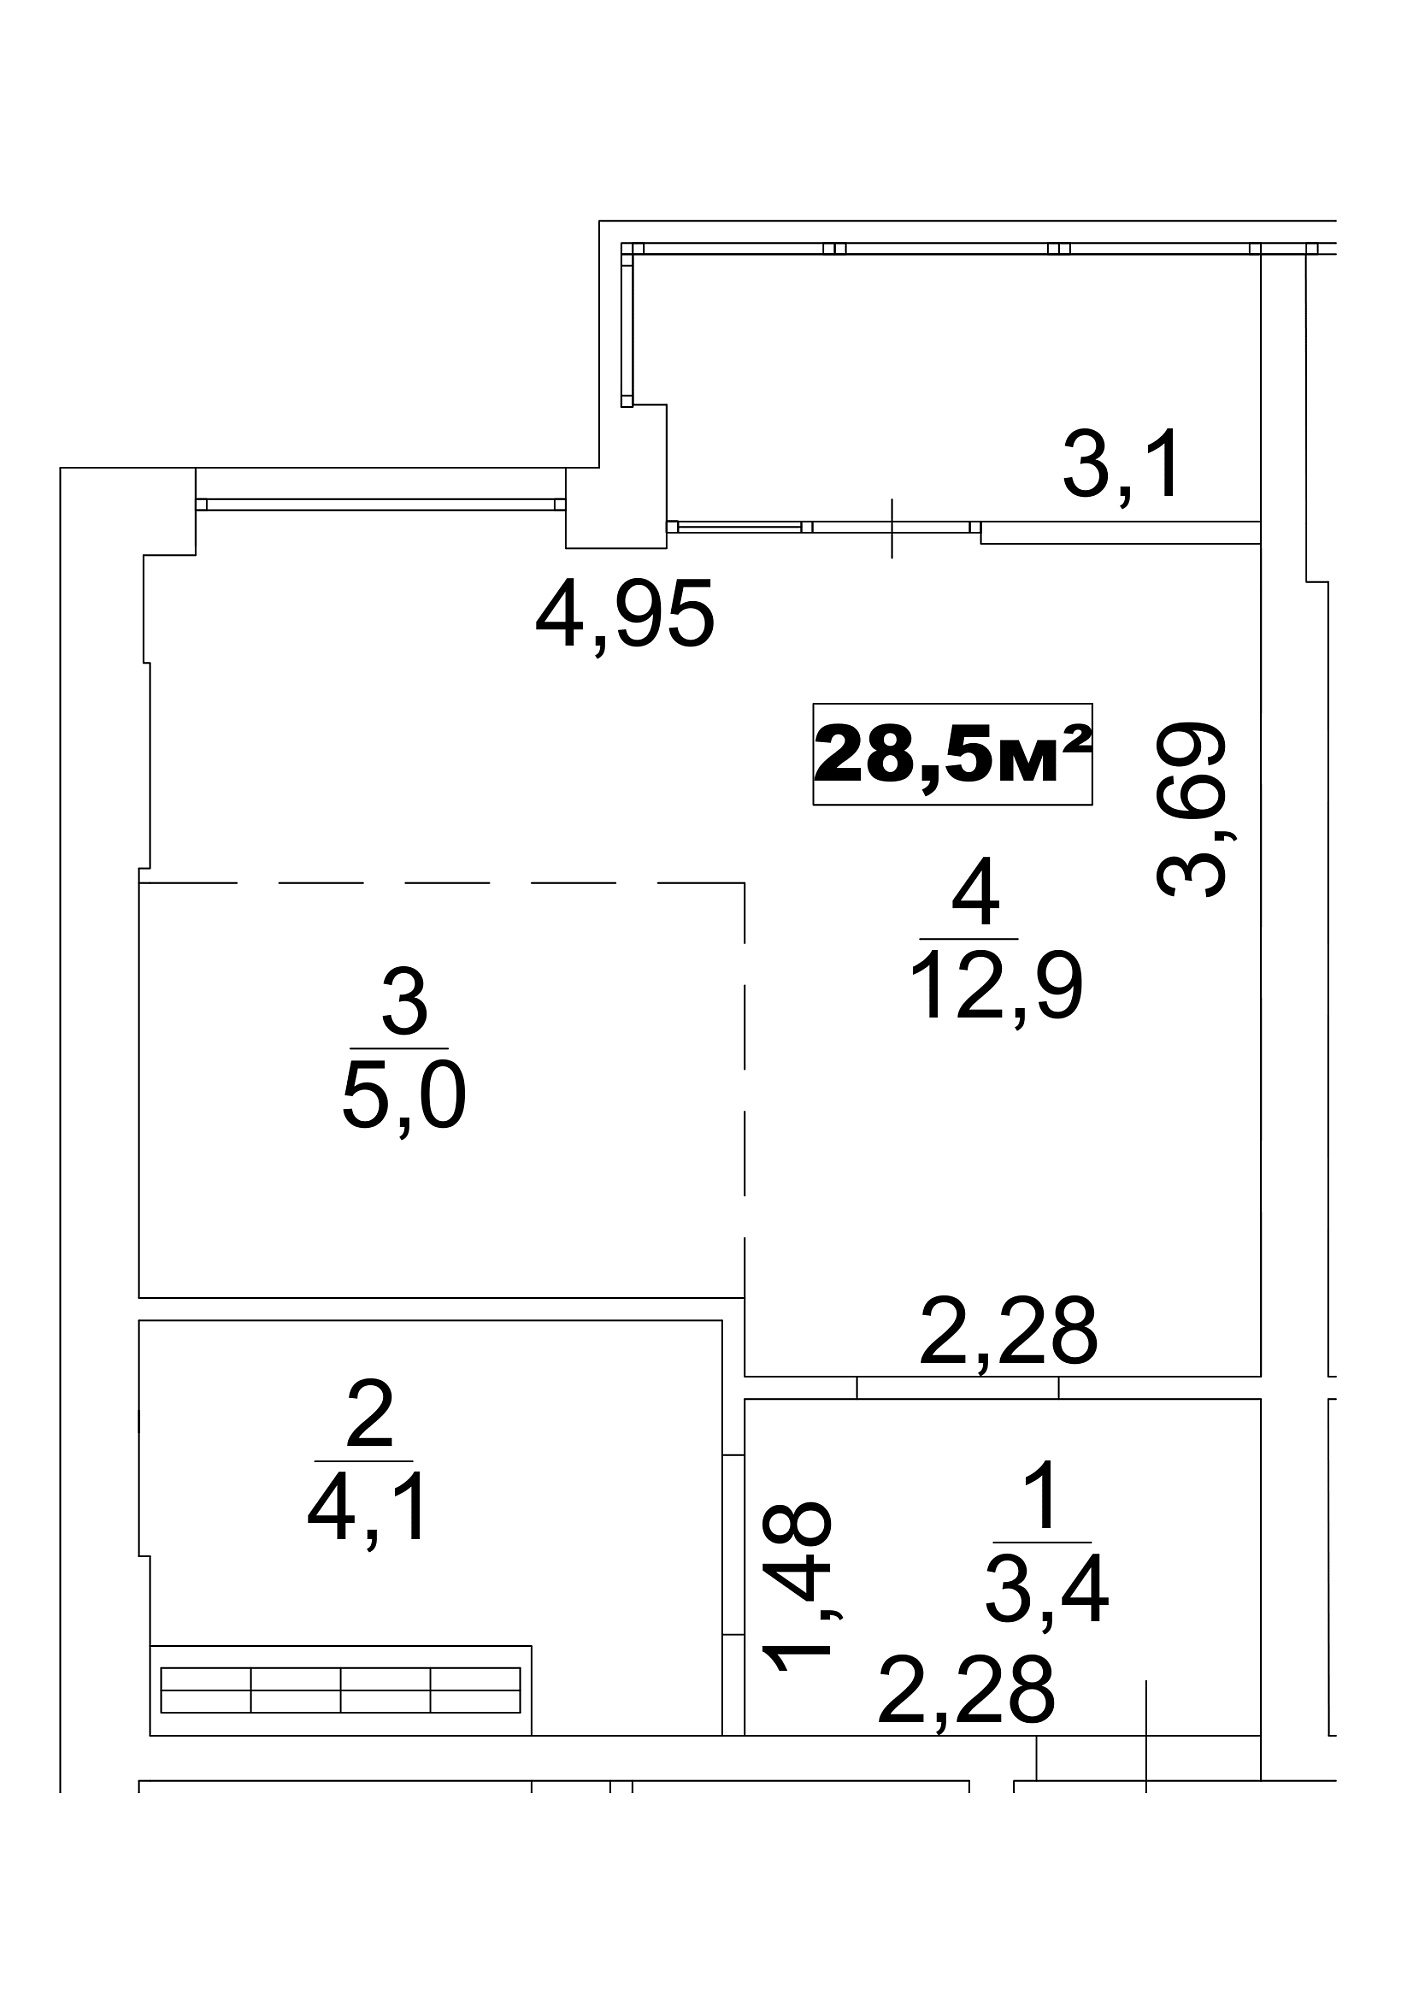 Планування Smart-квартира площею 28.5м2, AB-13-09/0072б.